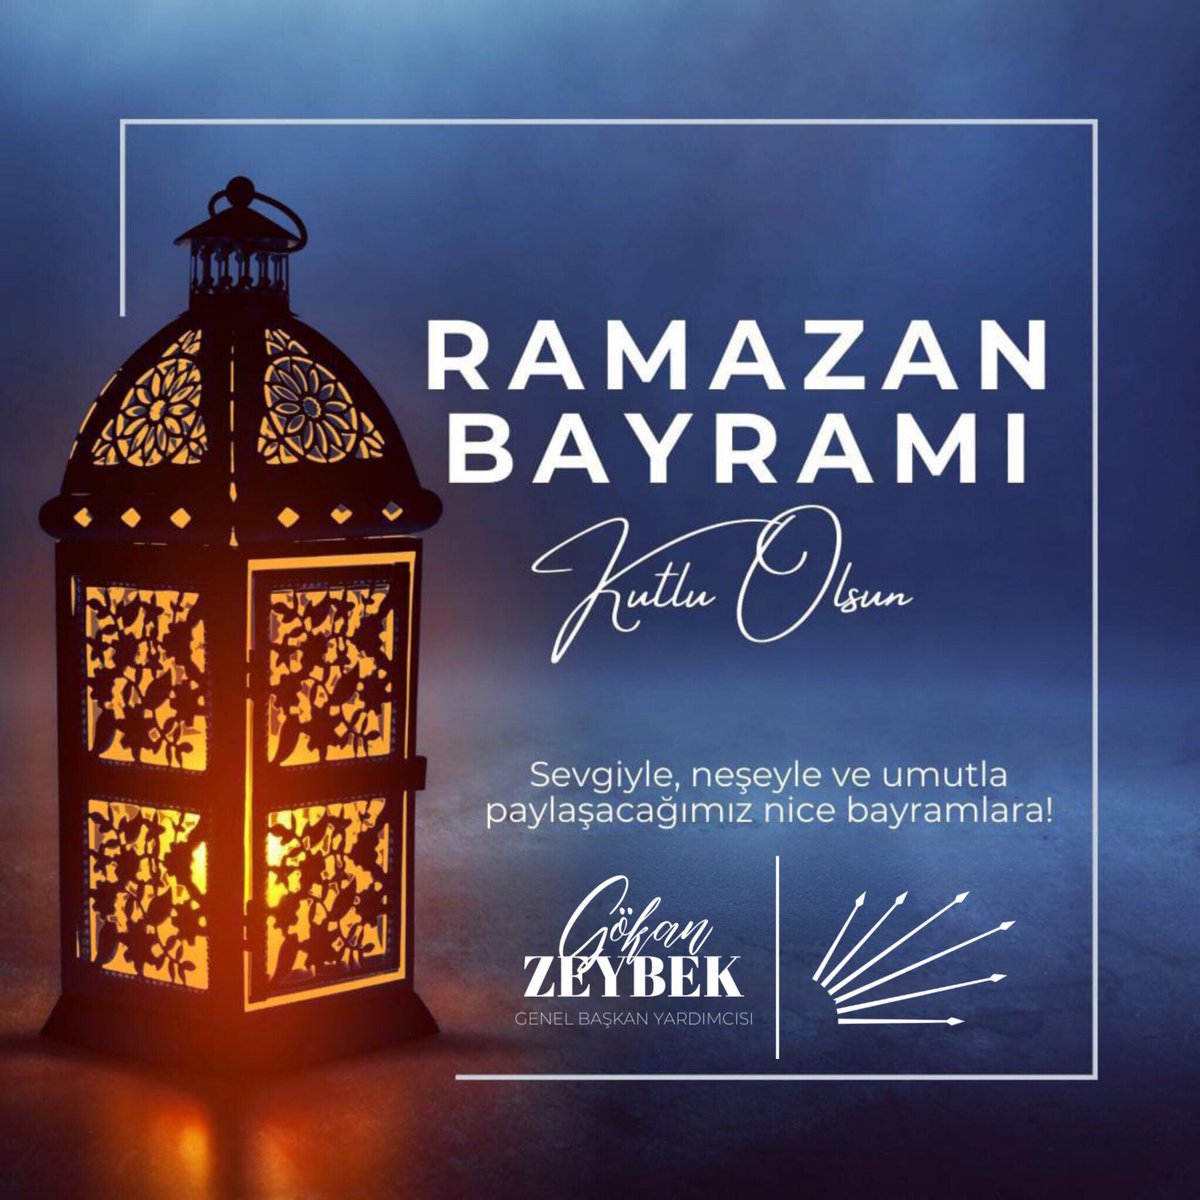 #RamazanBayramı'nın tüm insanlığa barış, huzur ve bereket getirmesini temenni ediyor, sevdiklerinizle mutlu bir bayram geçirmenizi diliyorum. Sevgiyle, neşeyle ve umutla paylaşacağımız nice bayramlara…